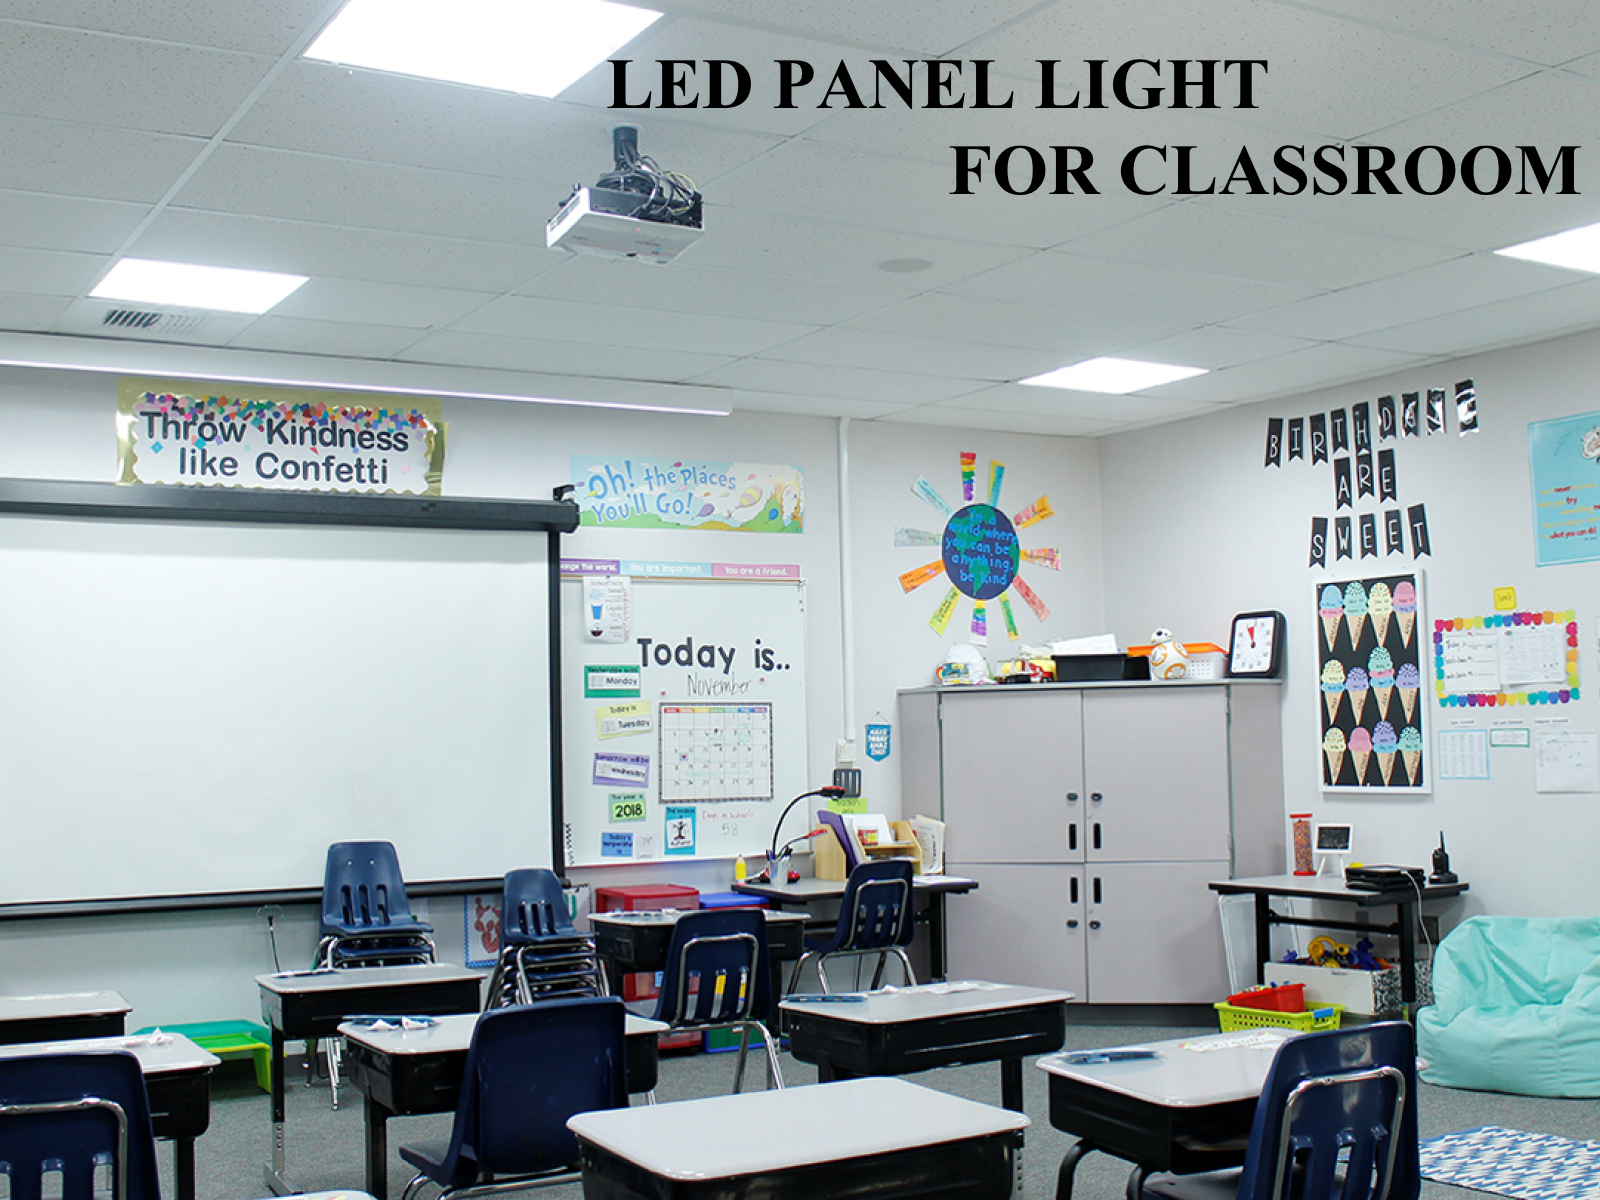 Exigences d'éclairage, de puissance, de température de couleur et spécifications d'installation des lampes LED pour les salles de classe